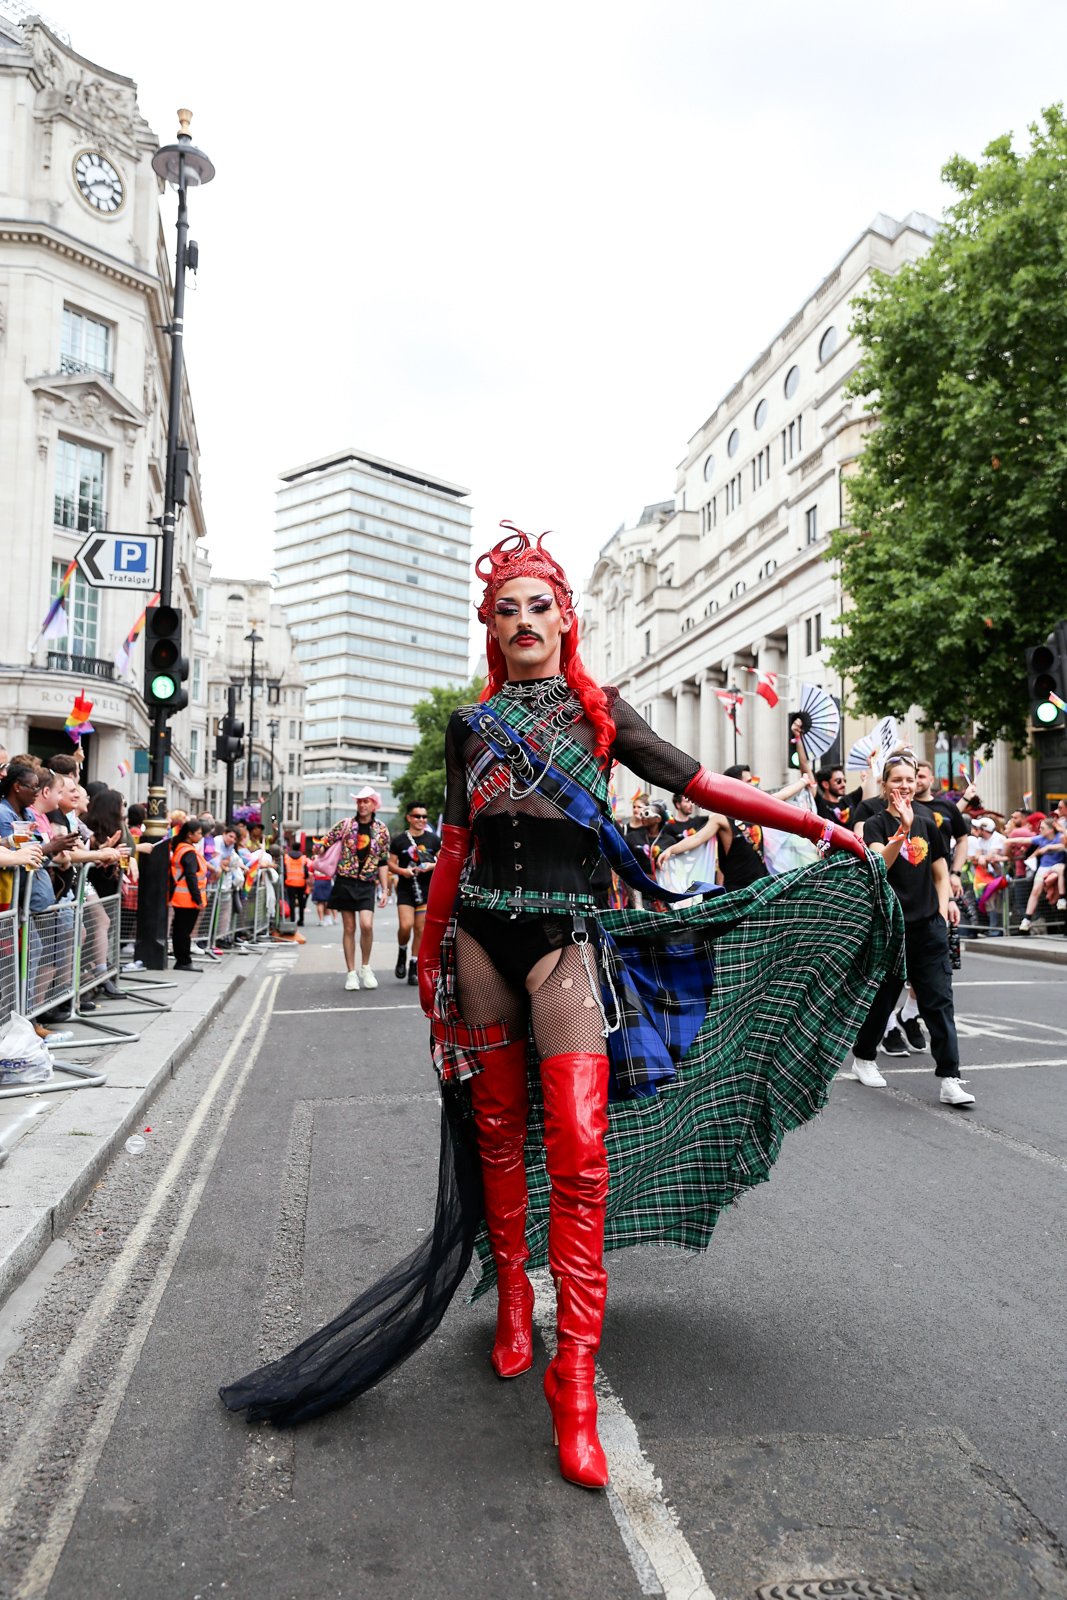 Pride in London 2022